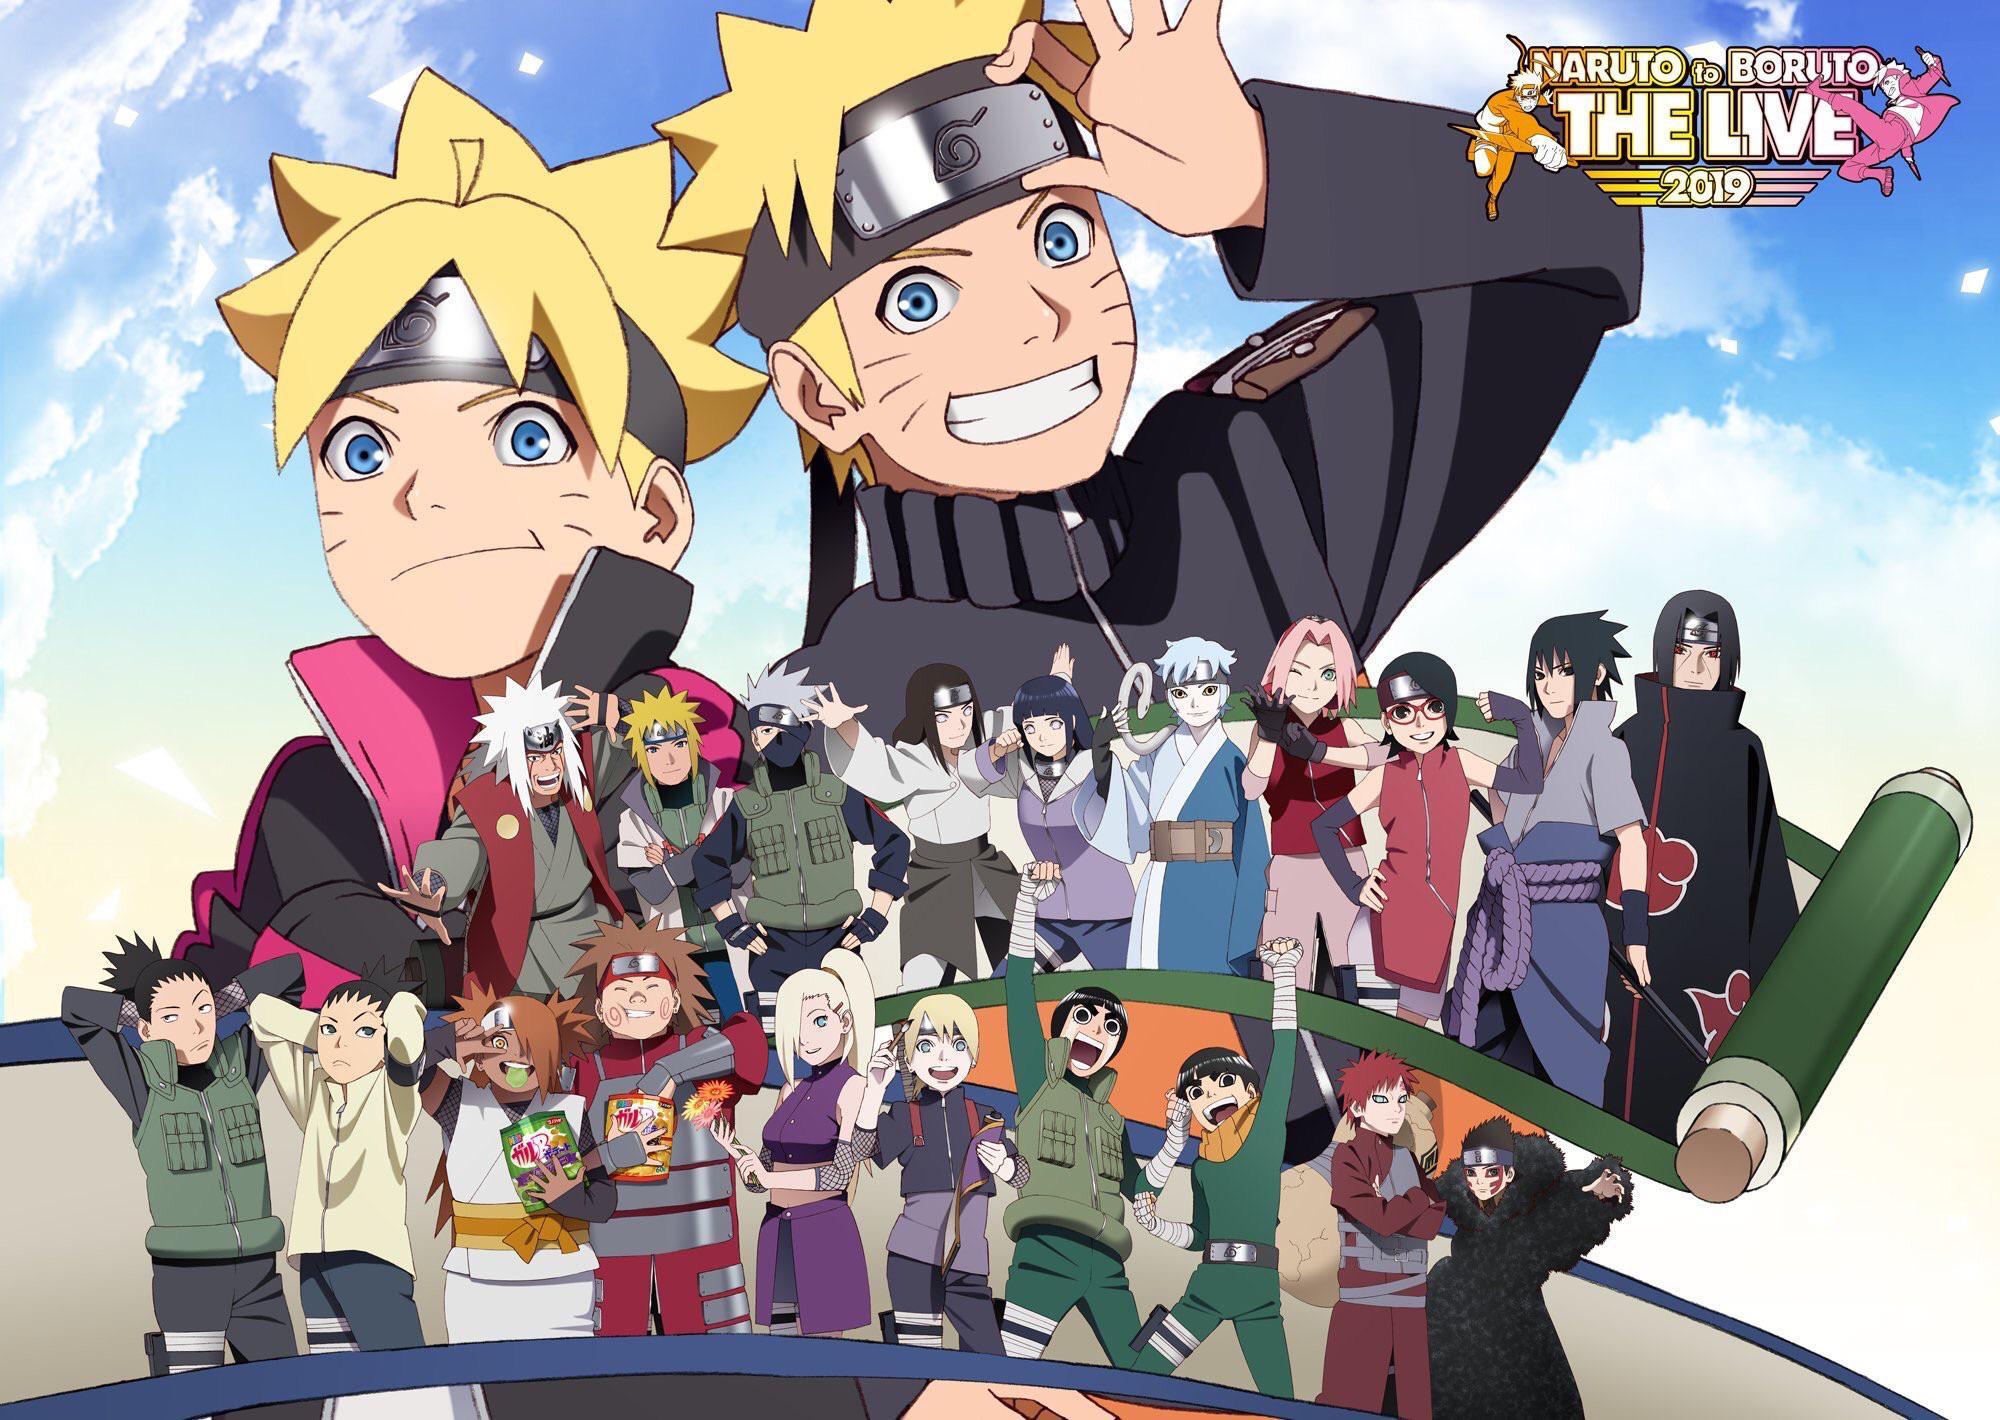 Boruto Naruto là bộ anime đầy sáng tạo, dẫn người xem nhân đôi hứng thú. Những cuộc phiêu lưu táo bạo và sự tiến hóa của các nhân vật sẽ làm bạn và gia đình của bạn thích thú chỉ bằng một lần xem.